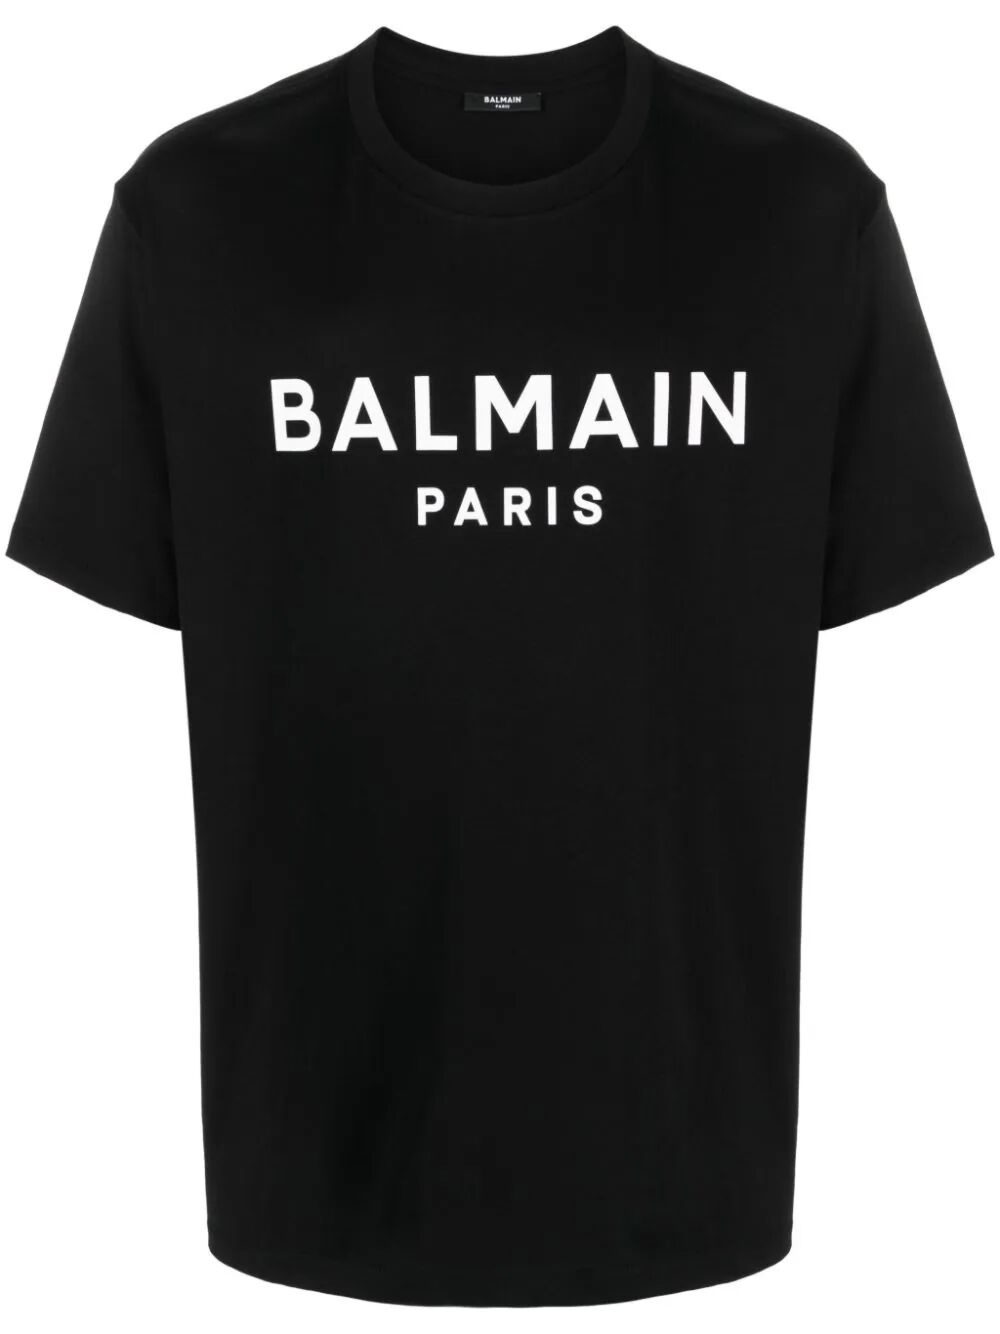 Balmain paris t-shirt - 1